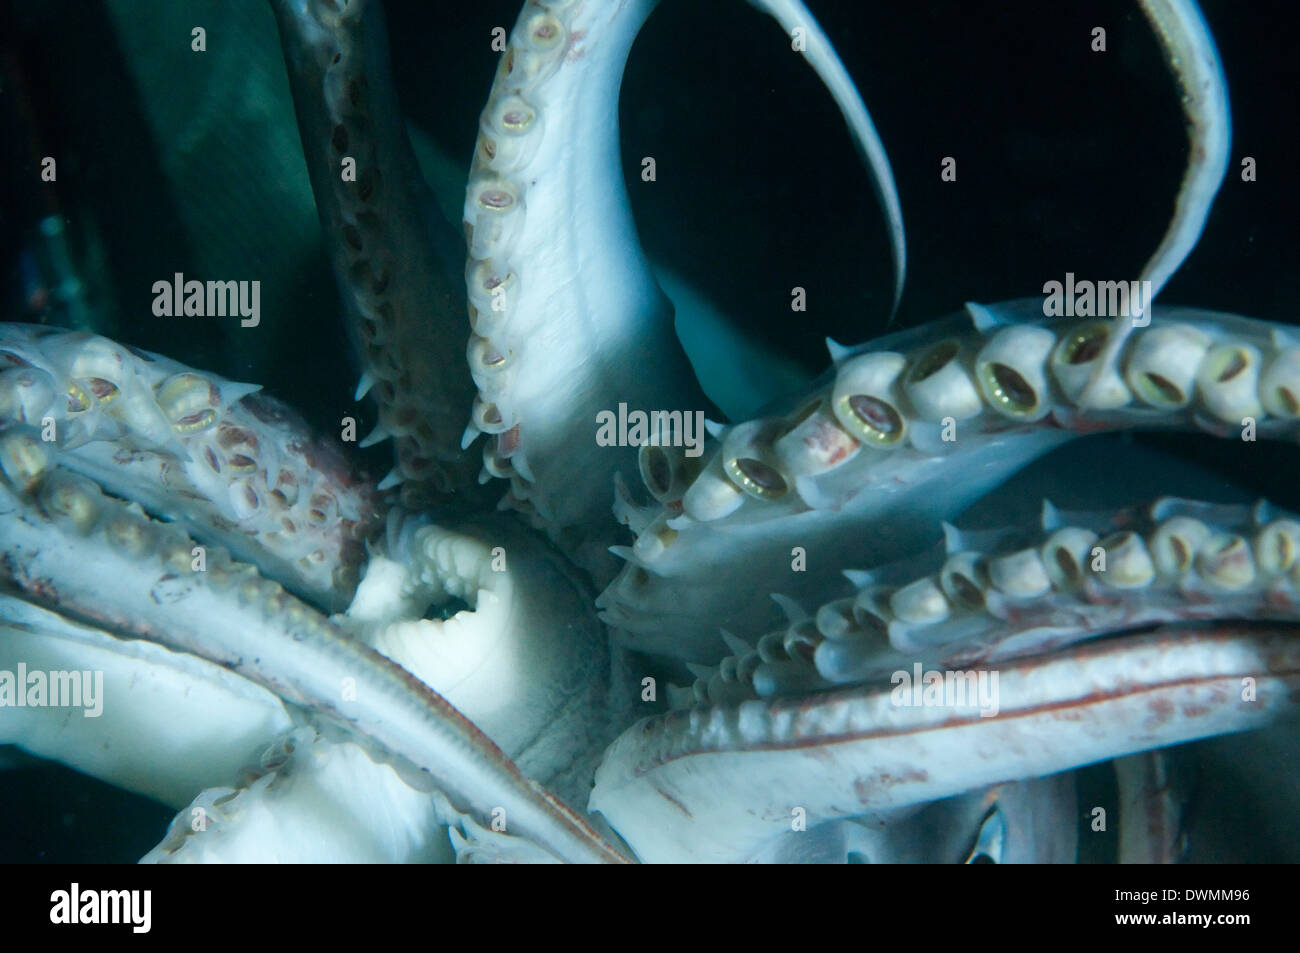 Cavidad bucal (boca) y tentáculos de Humboldt (Jumbo) calamares (Dosidicus gigas), el Golfo de California, Baja California, México Foto de stock